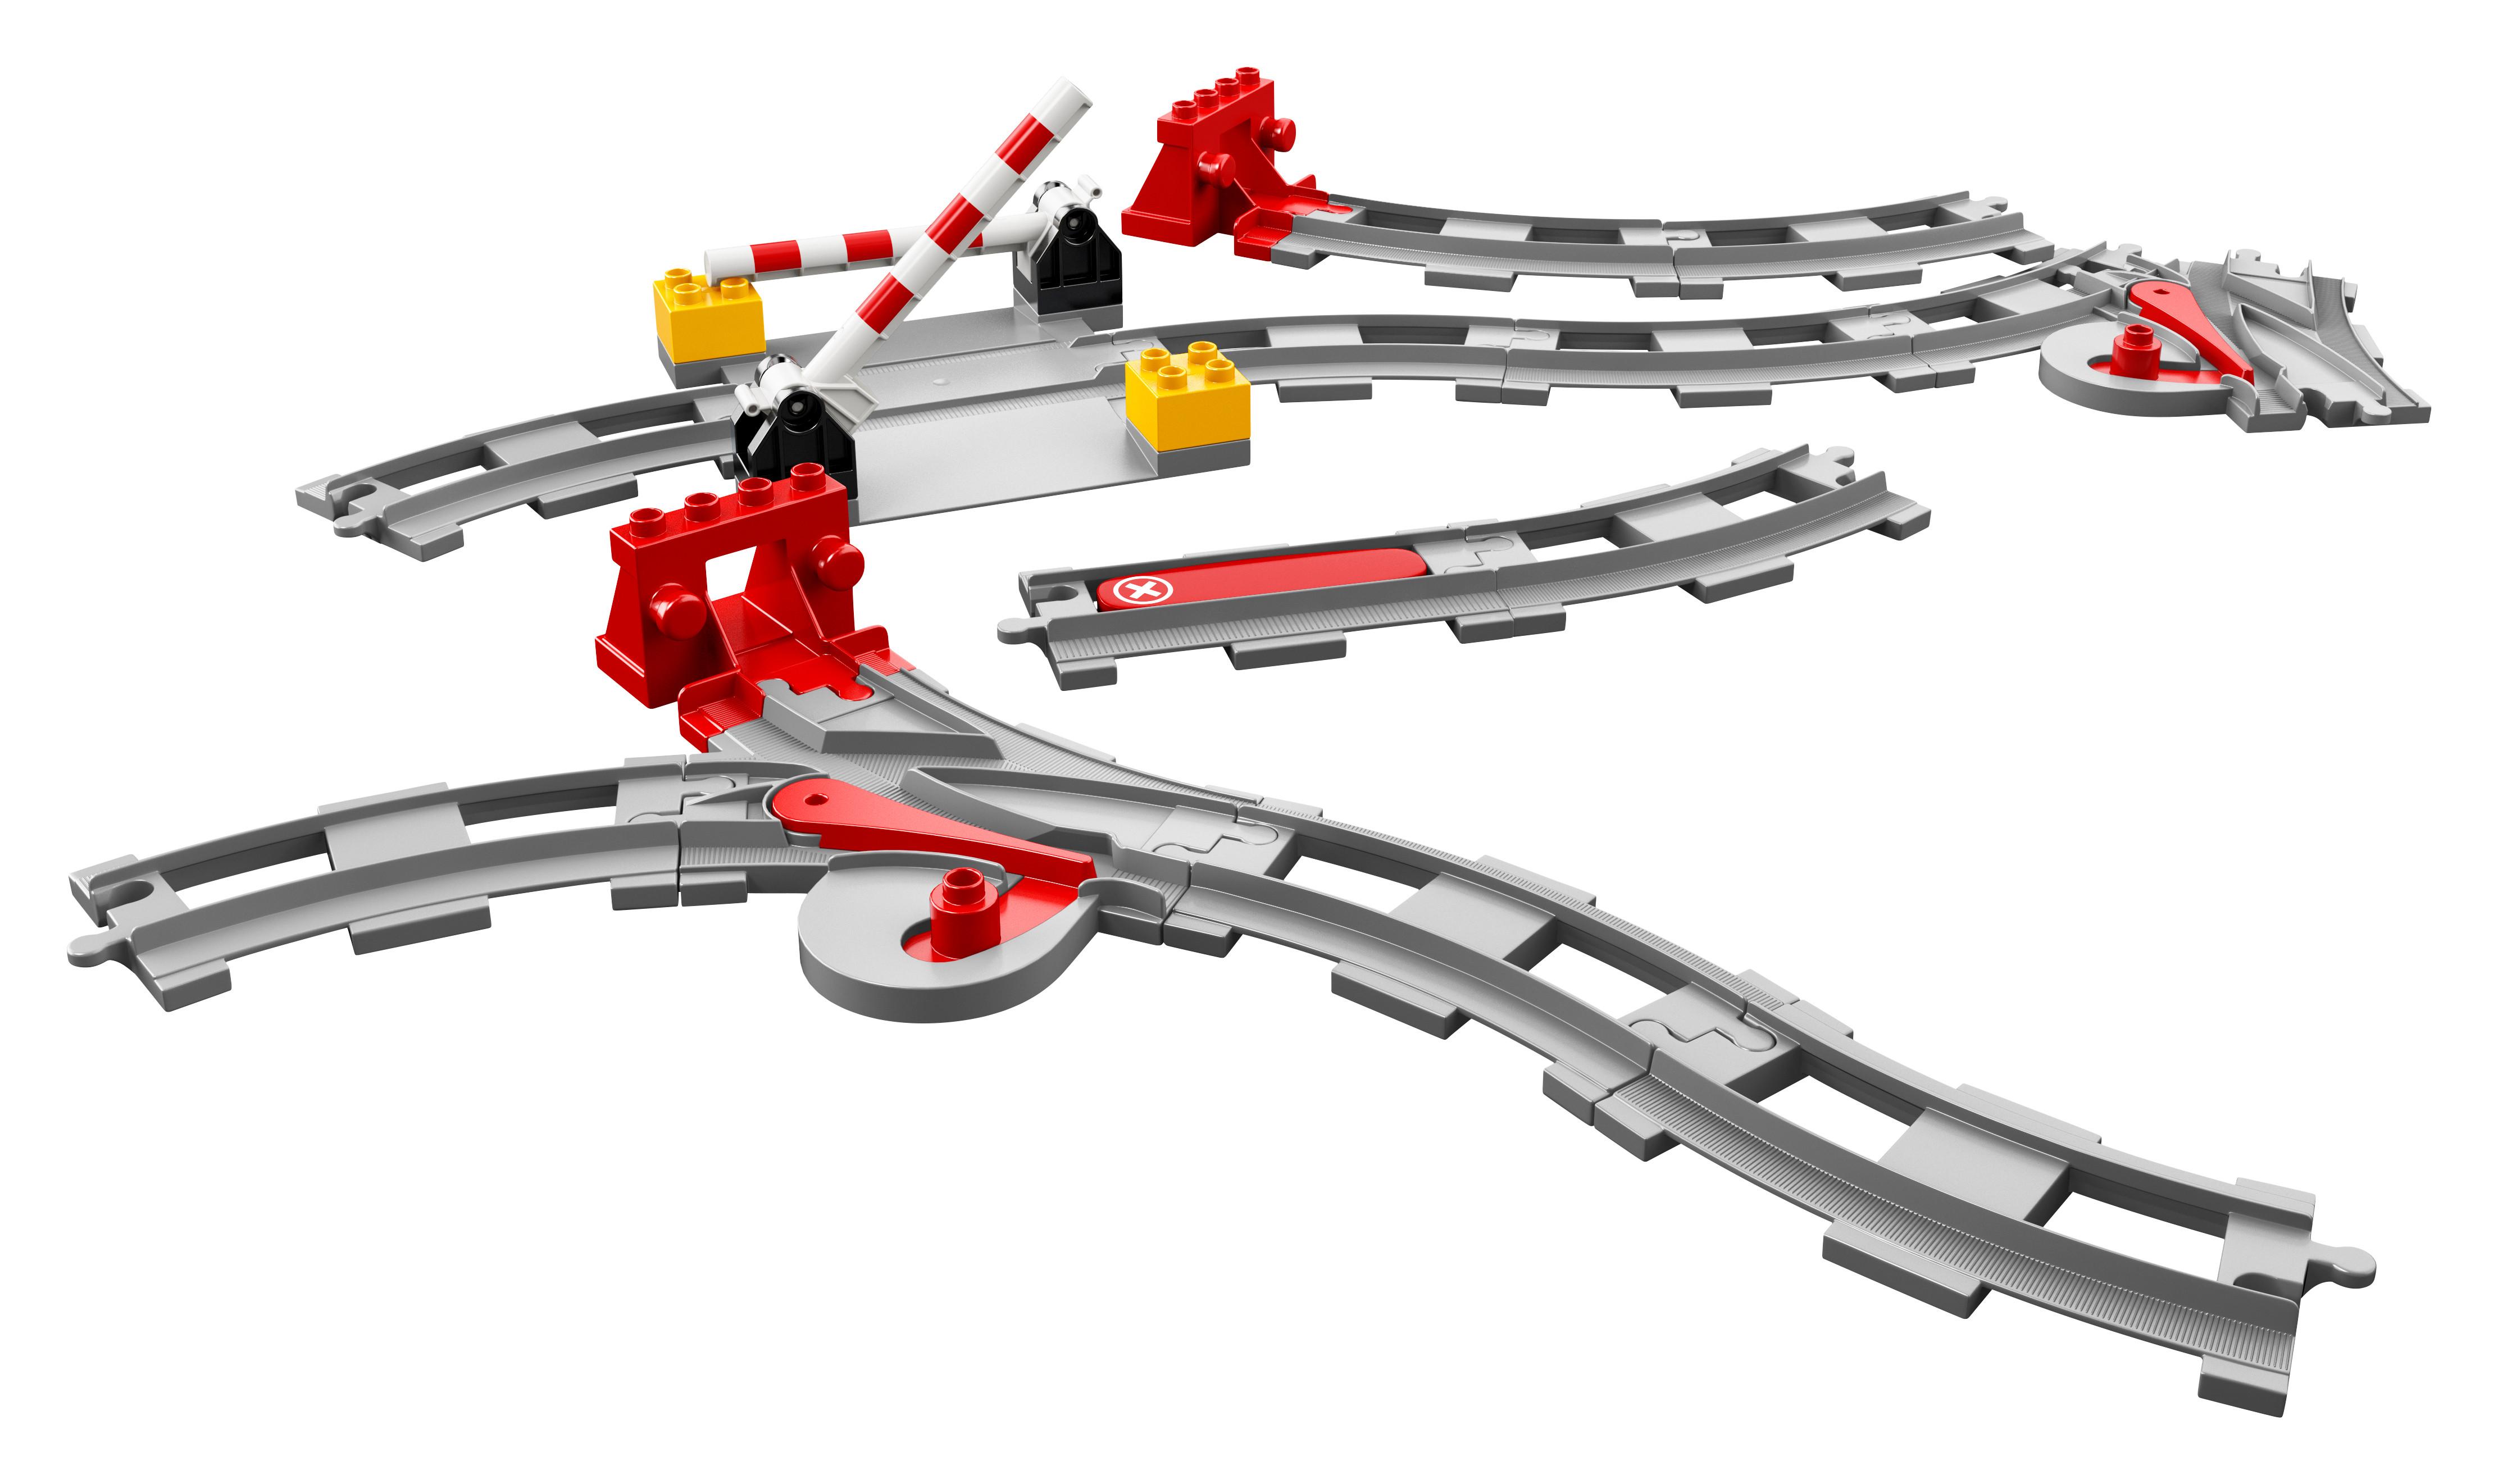 LEGO®  10882 Eisenbahn Schienen 